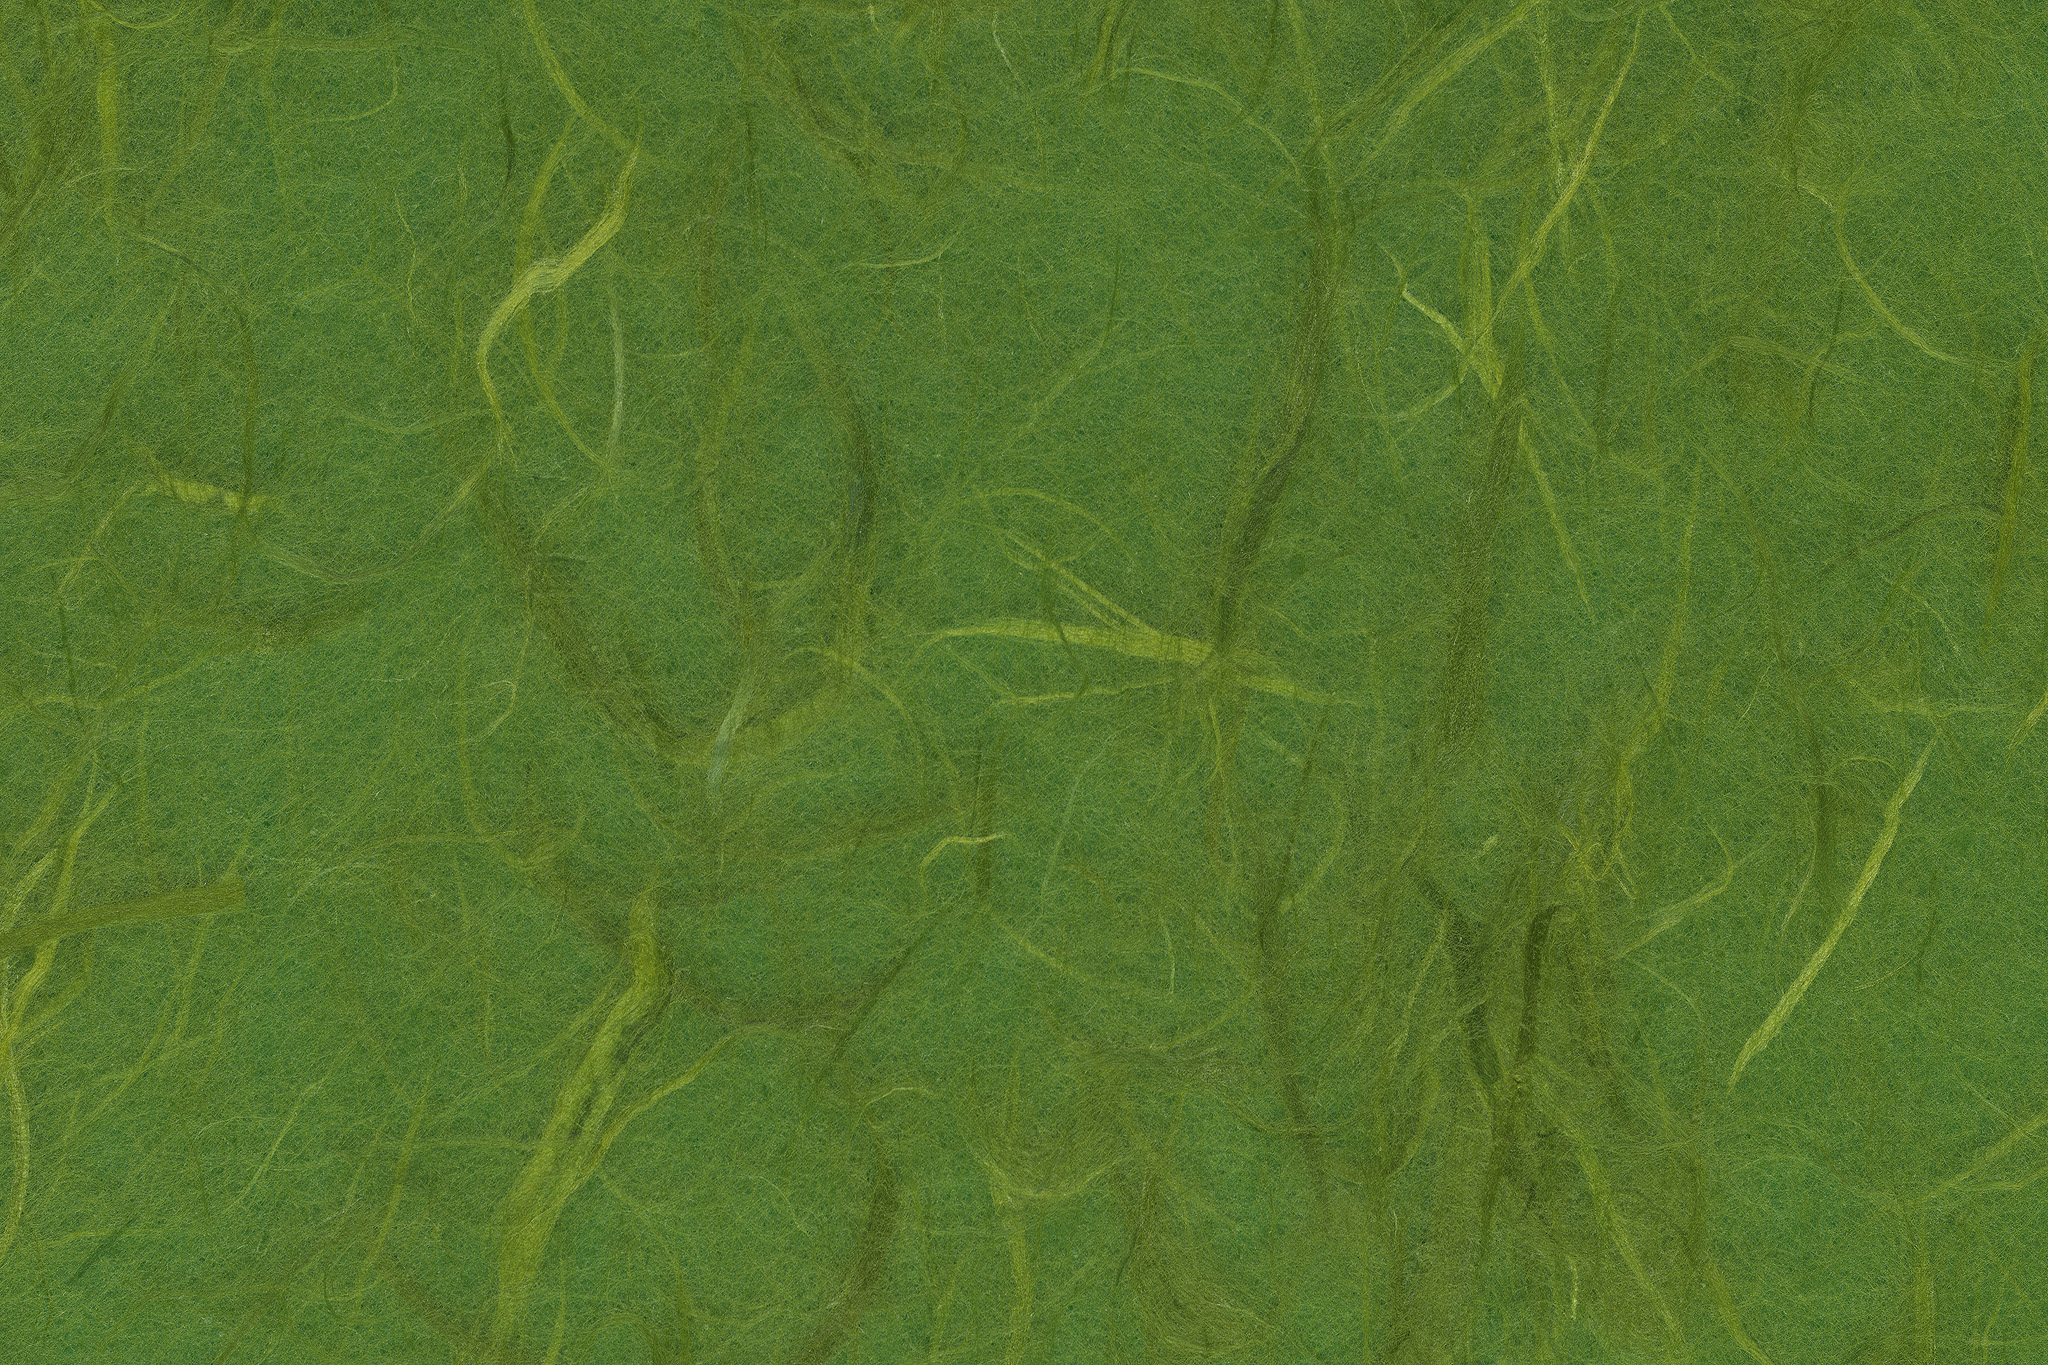 筋のテクスチャがある深緑色の雲竜和紙 のテクスチャ素材を無料ダウンロード 1 フリー素材 Beiz Images